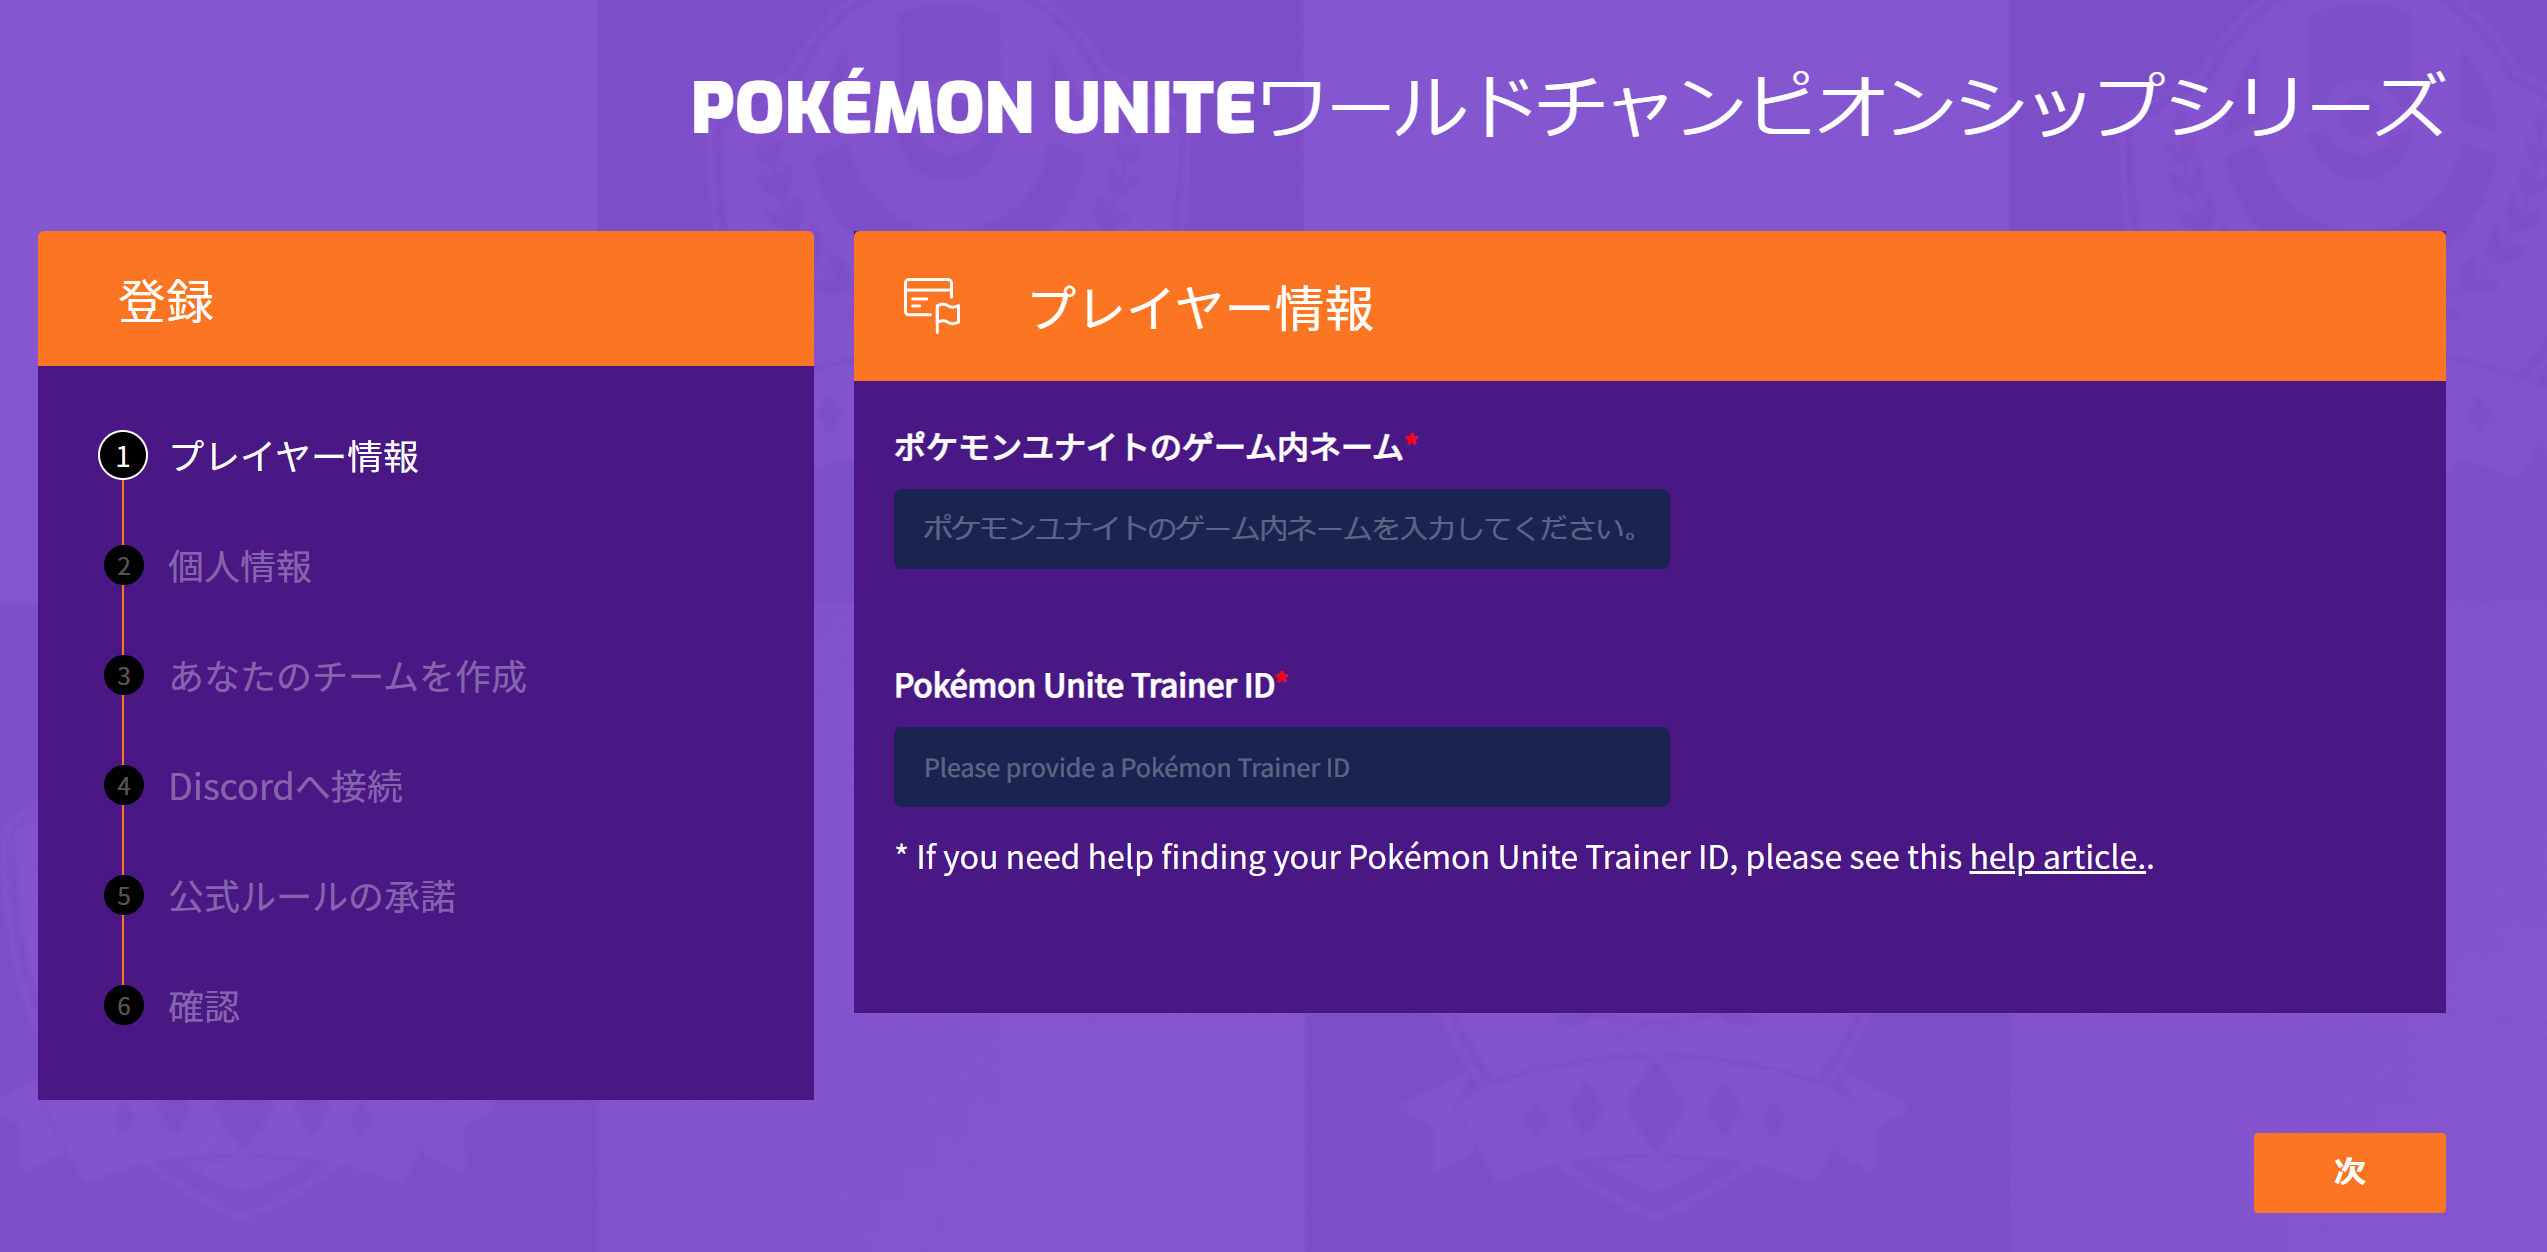 ポケモンユナイト ワールドチャンピオンシップス22 チーム登録 エントリー方法 Pokemon Unite 公式サイト